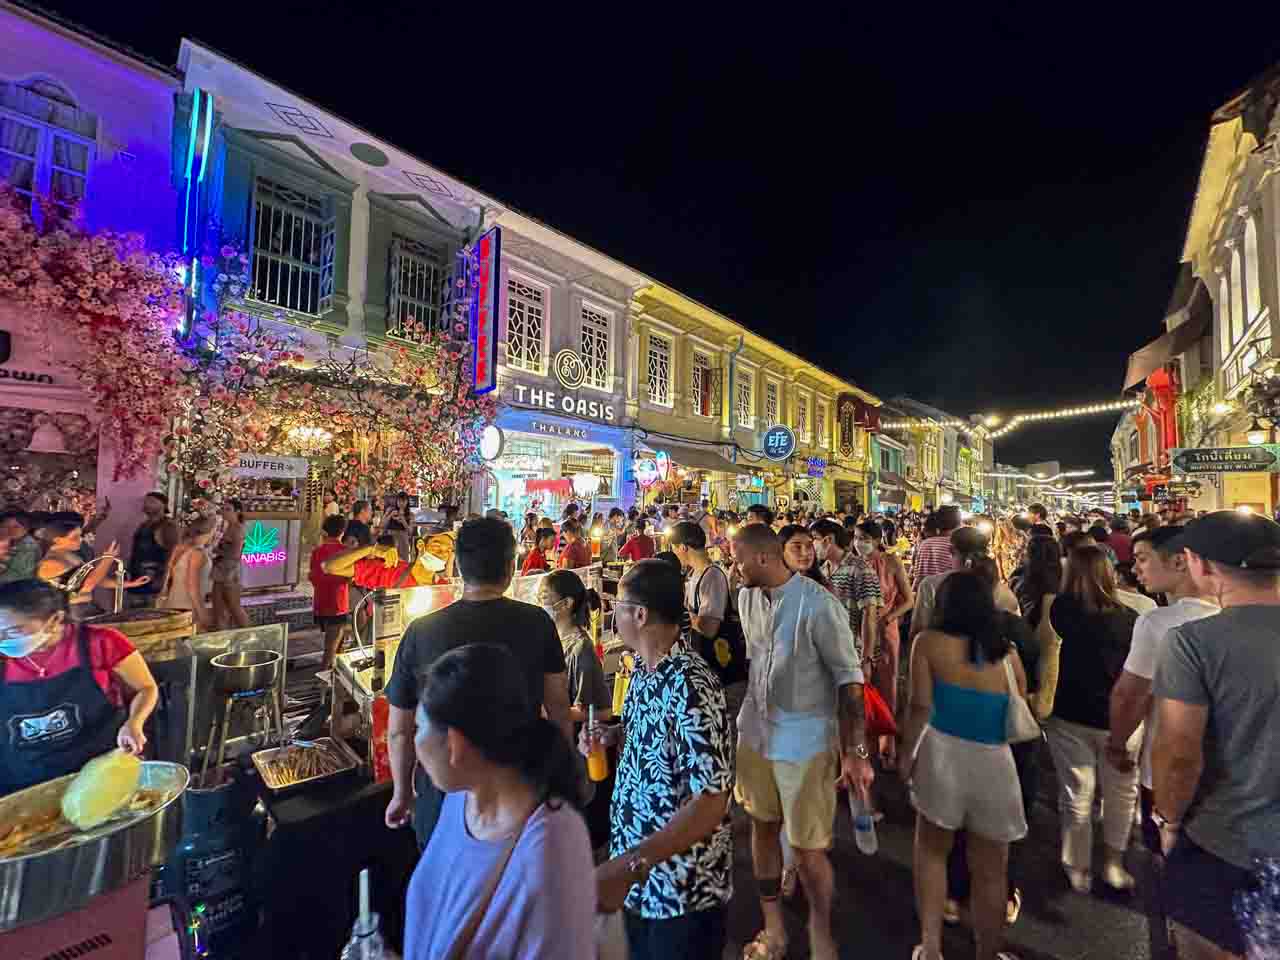 Phuket Town, o centrinho antigo de Phuket na Tailândia é super movimentado à noite efotogênico durante o dia.